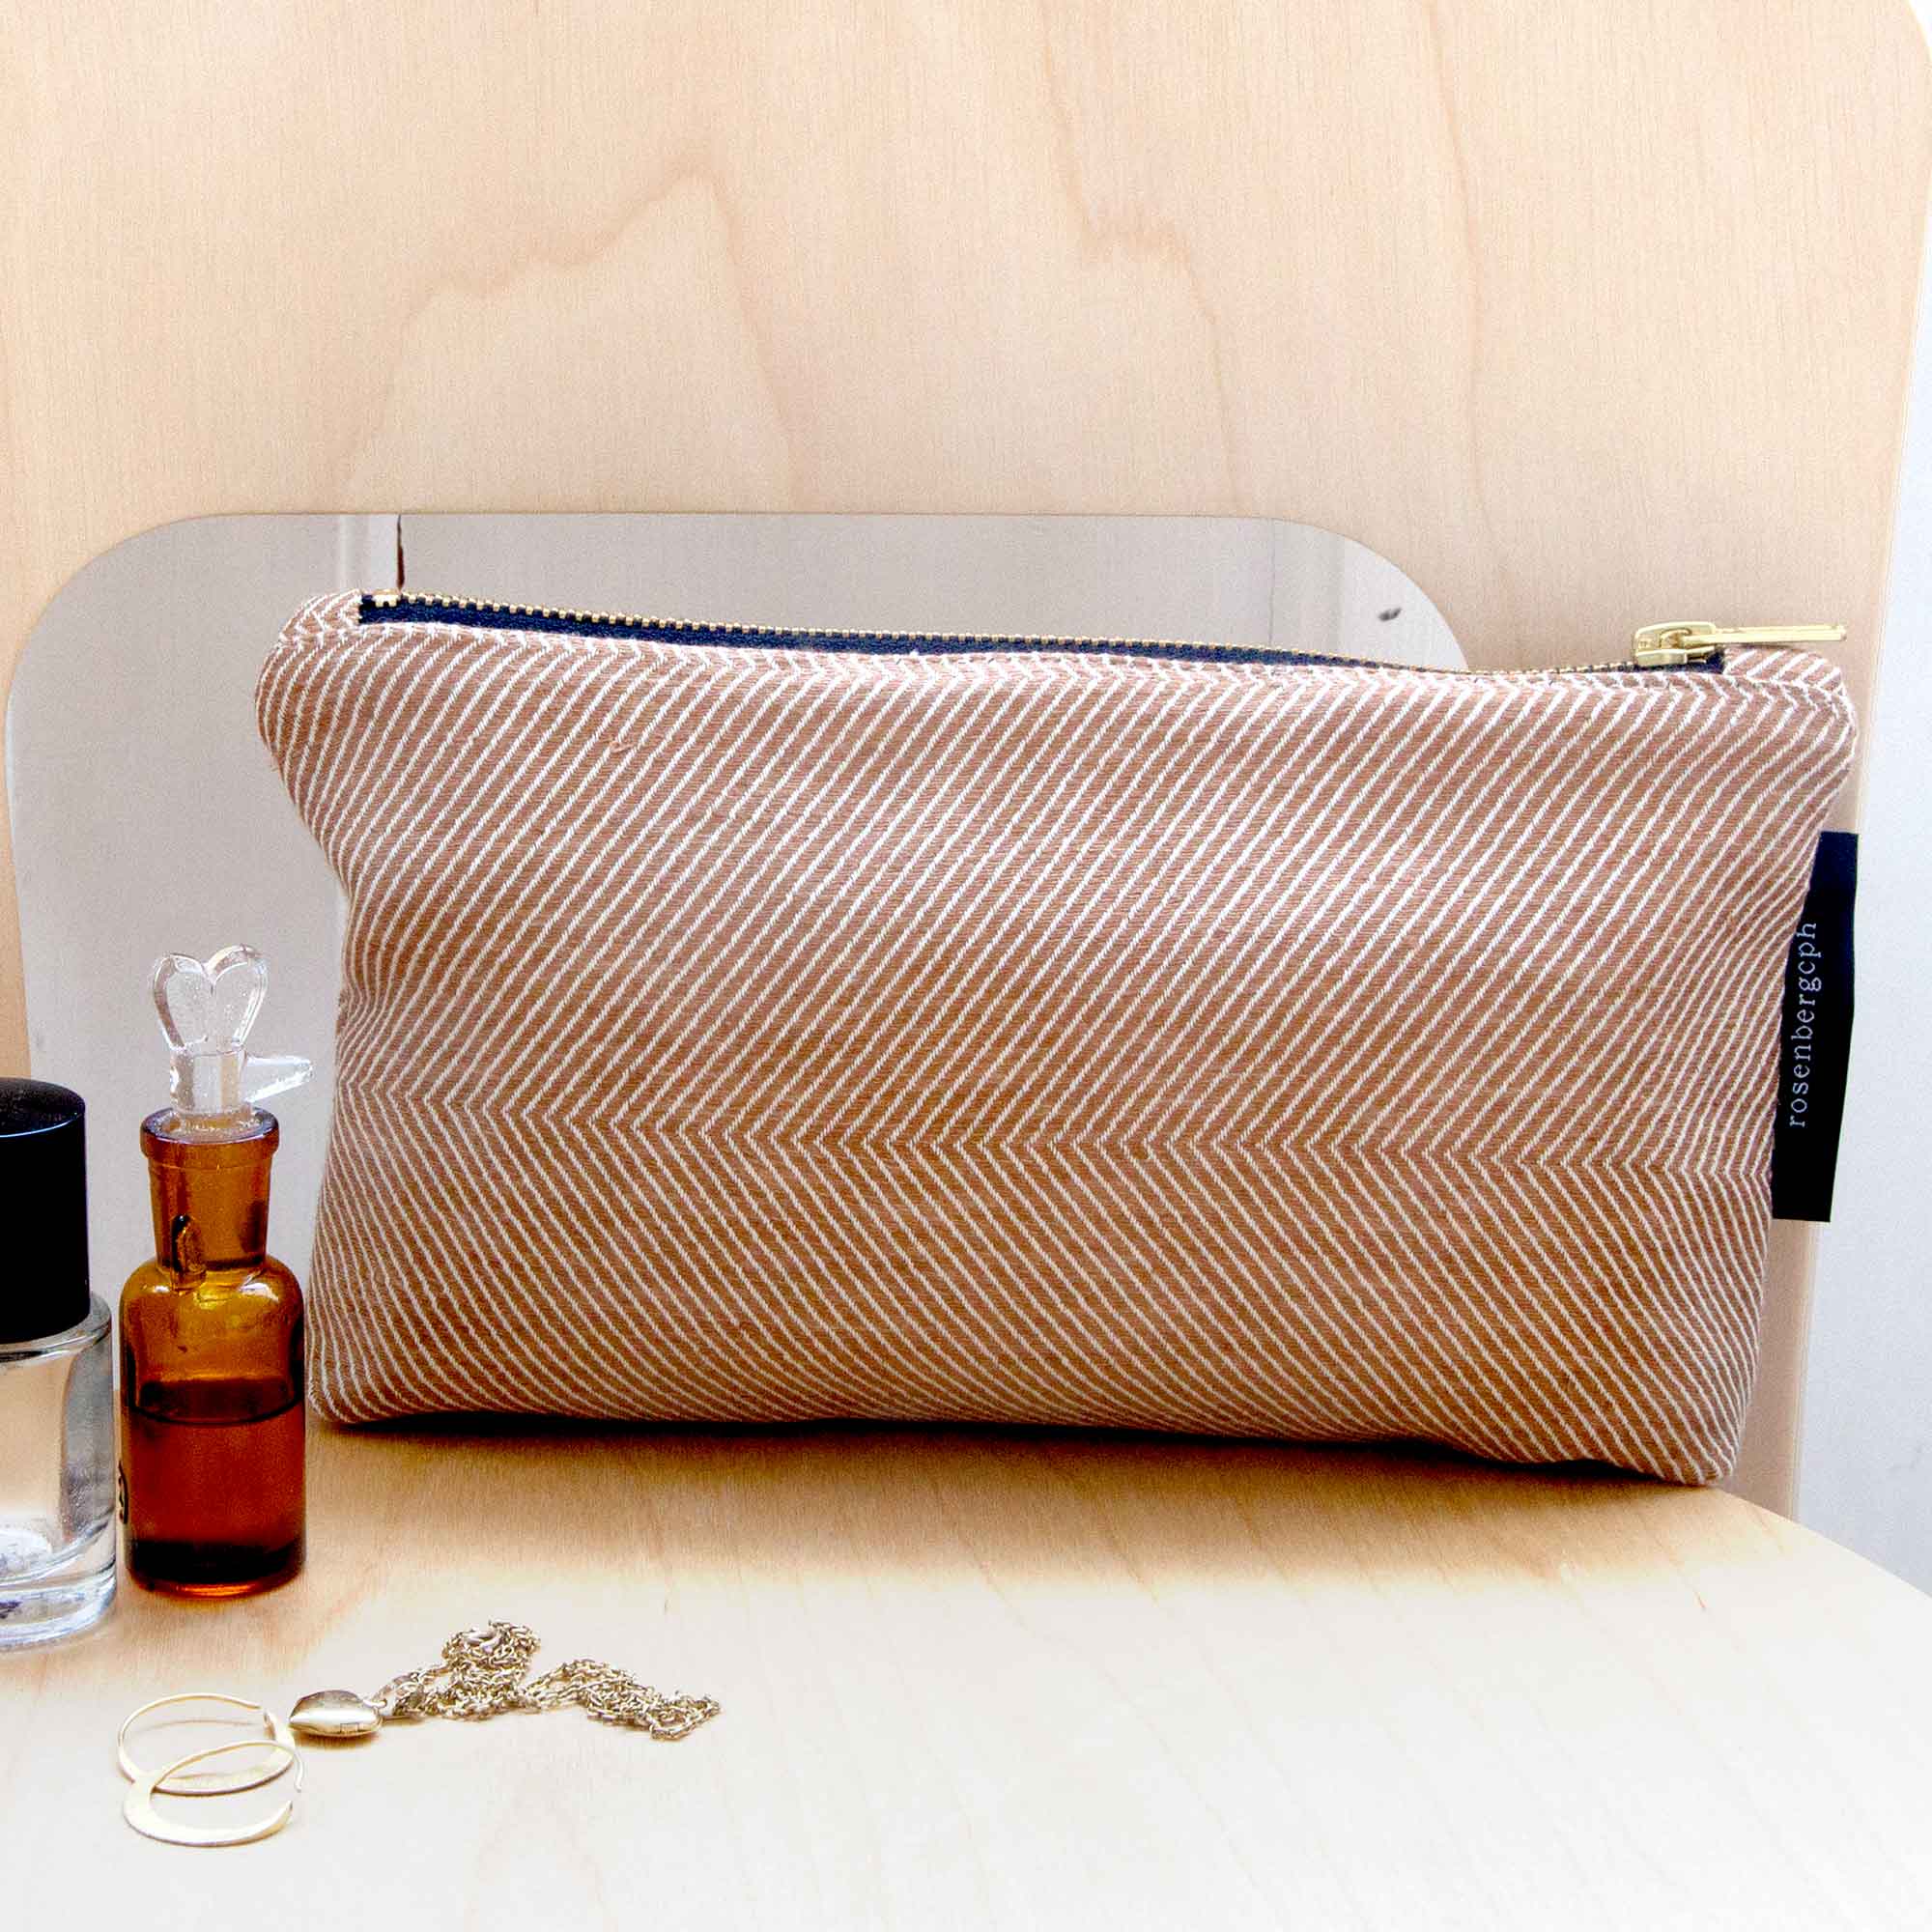 Shift linen/cotton purse, almond design Anne Rosenberg, RosenbergCph